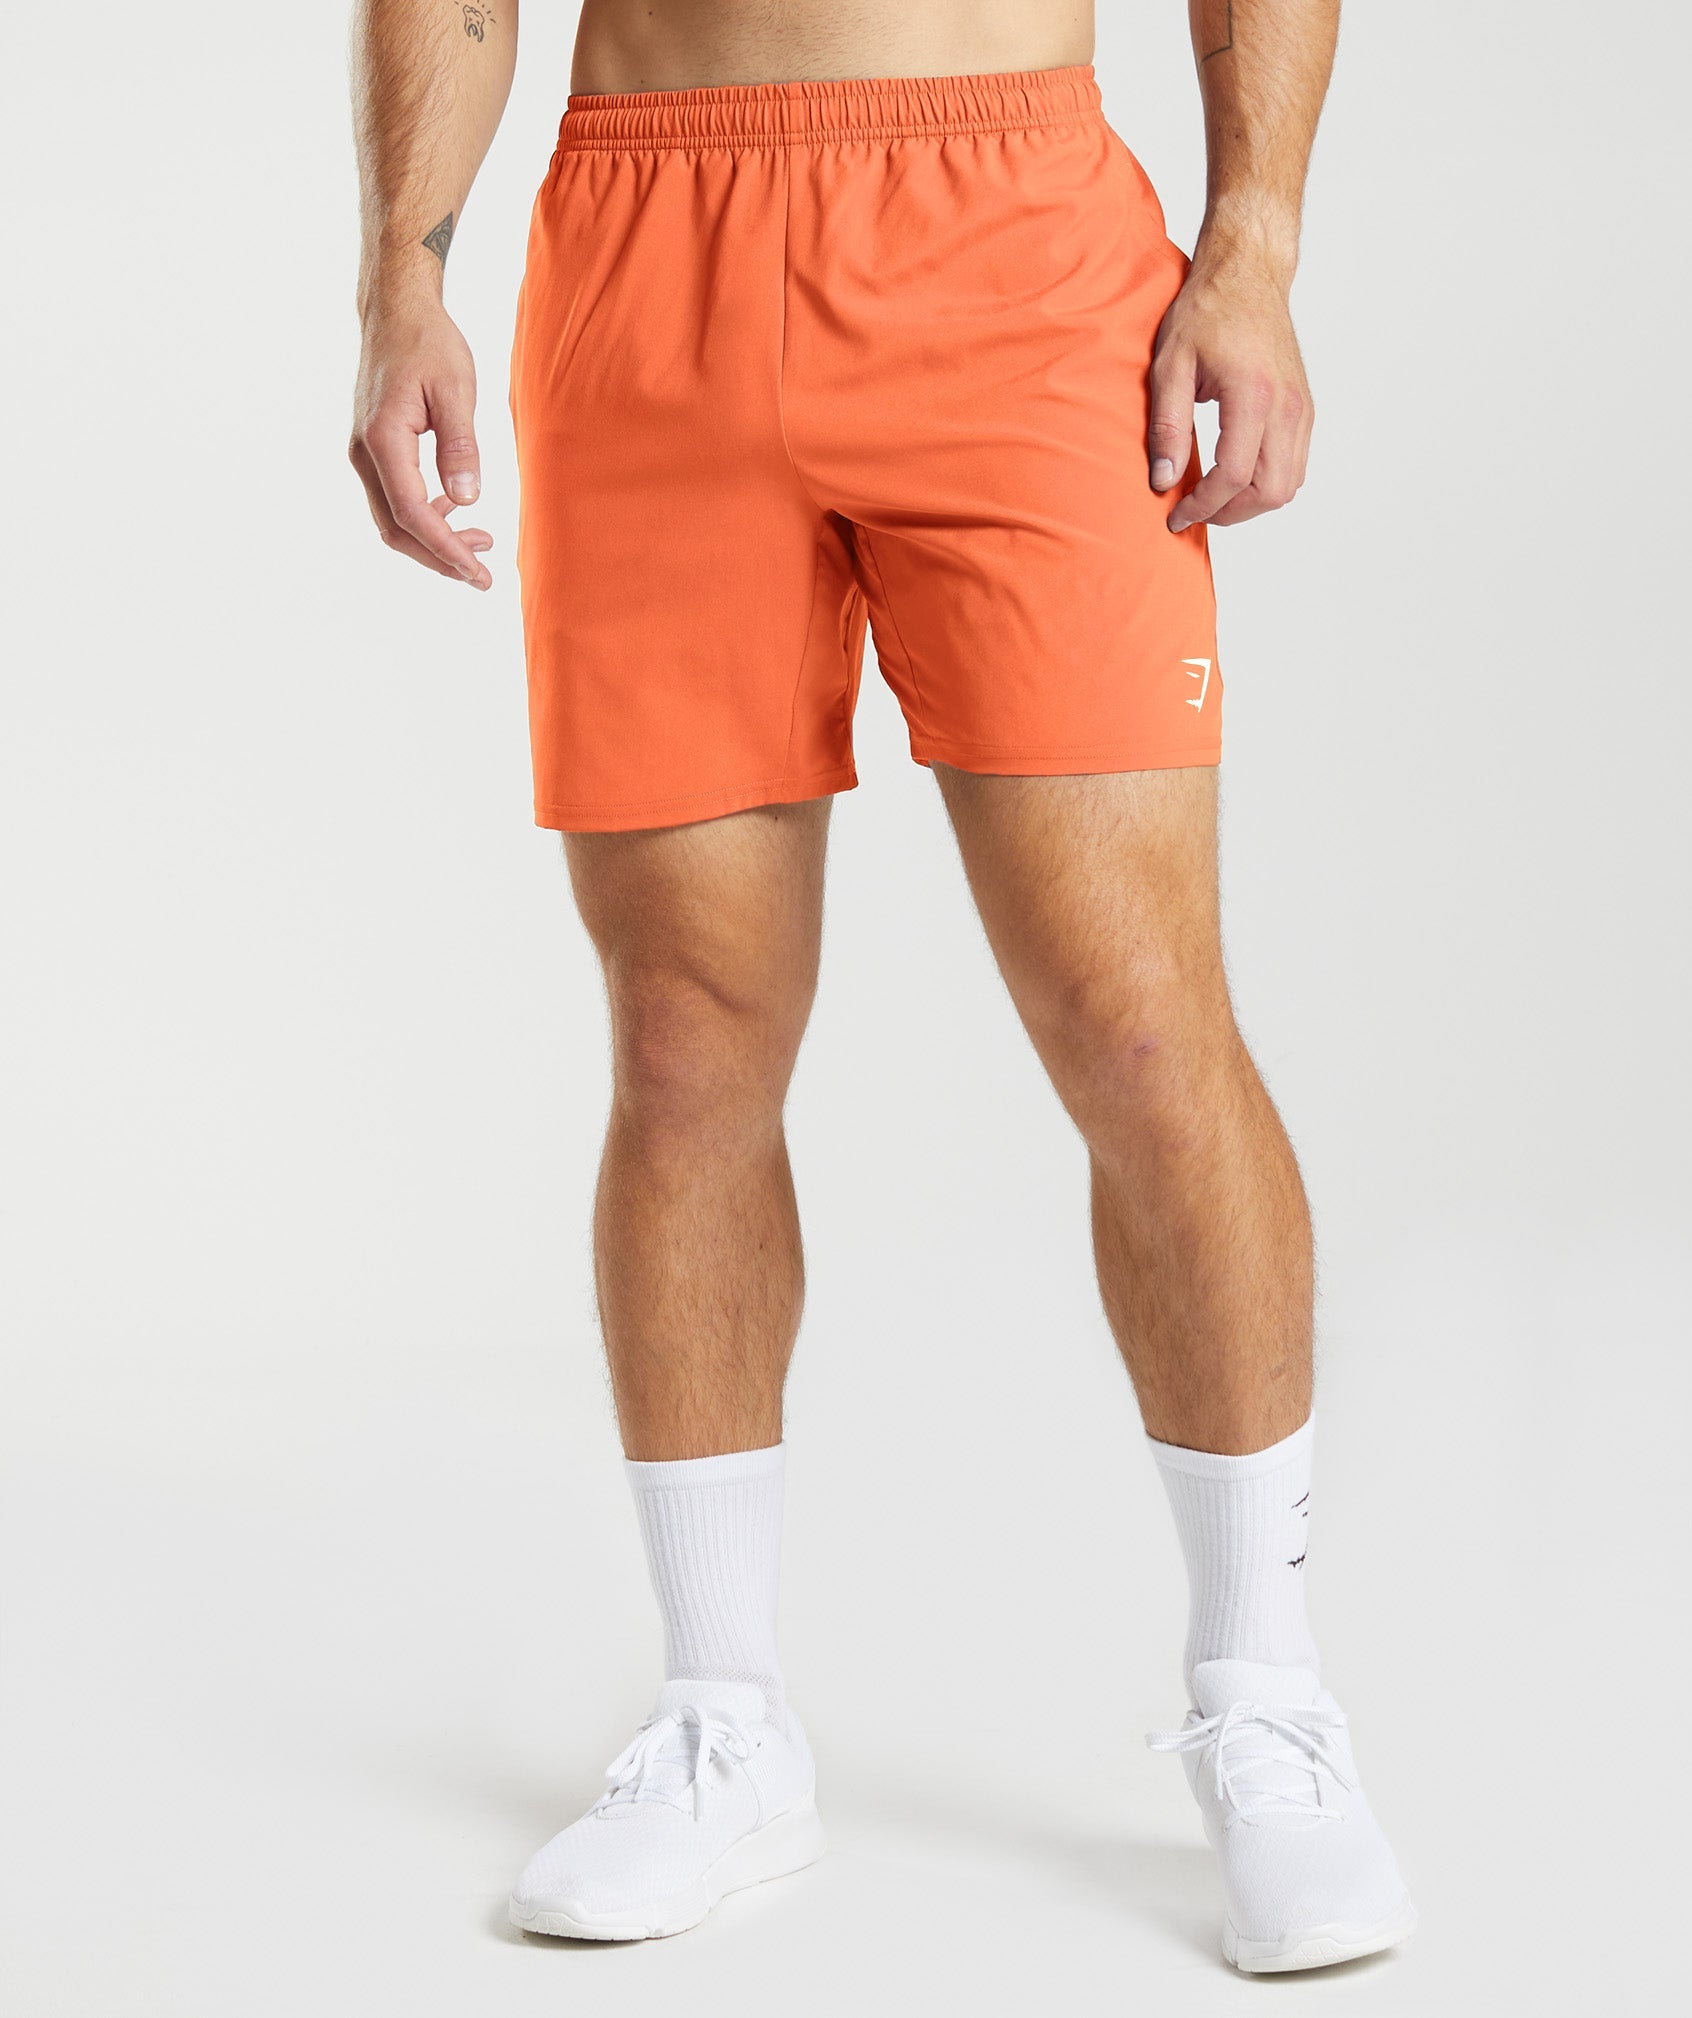 Gymshark Arrival Shorts - Papaya Orange